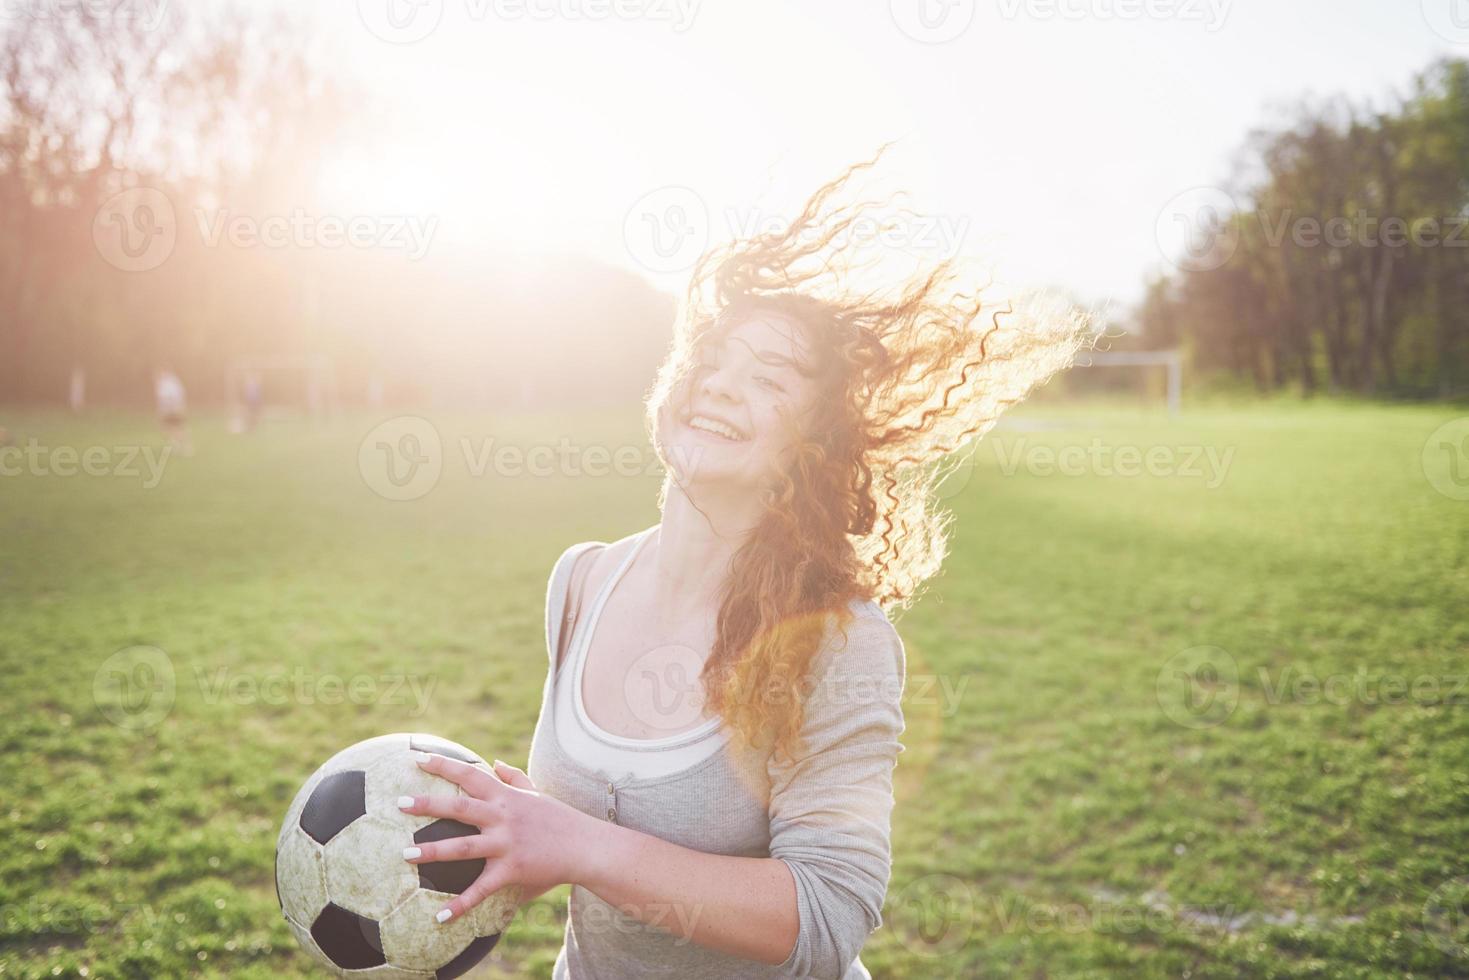 jonge roodharige sexy meisje in casual speler in voetbalstadion bij zonsondergang foto